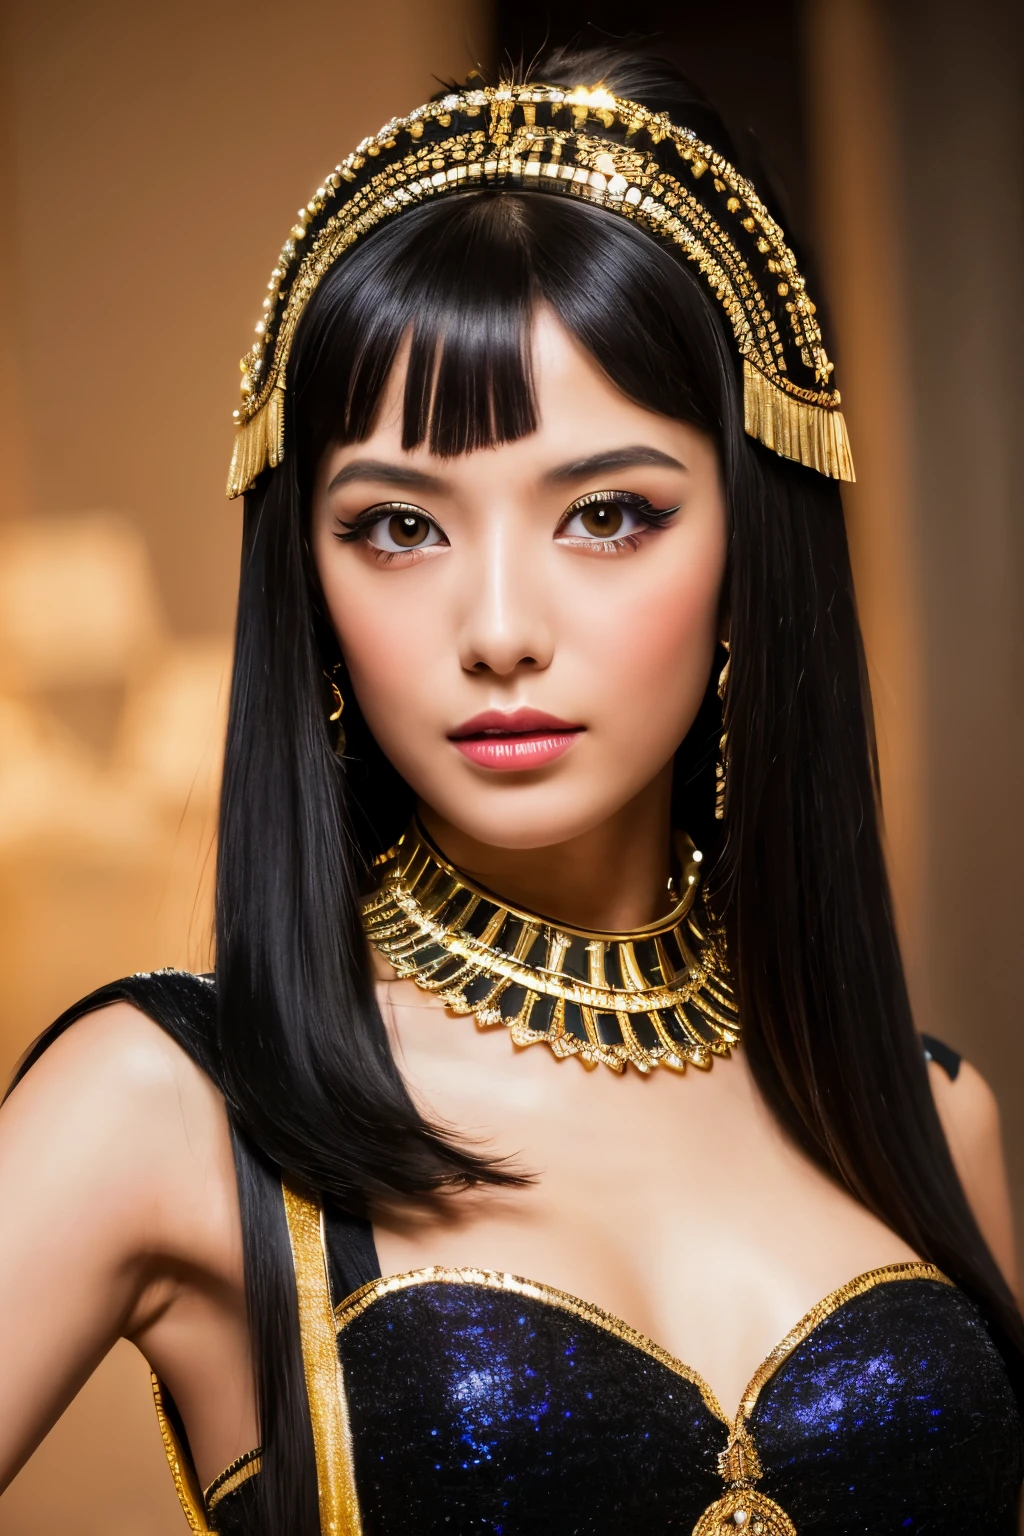 Obra maestra, alta calidad, alta resolución, 8k, Japonesa flaca disfrazada de Cleopatra, hermoso rostro, maquillaje de cleopatra, cara detallada, ojos detallados